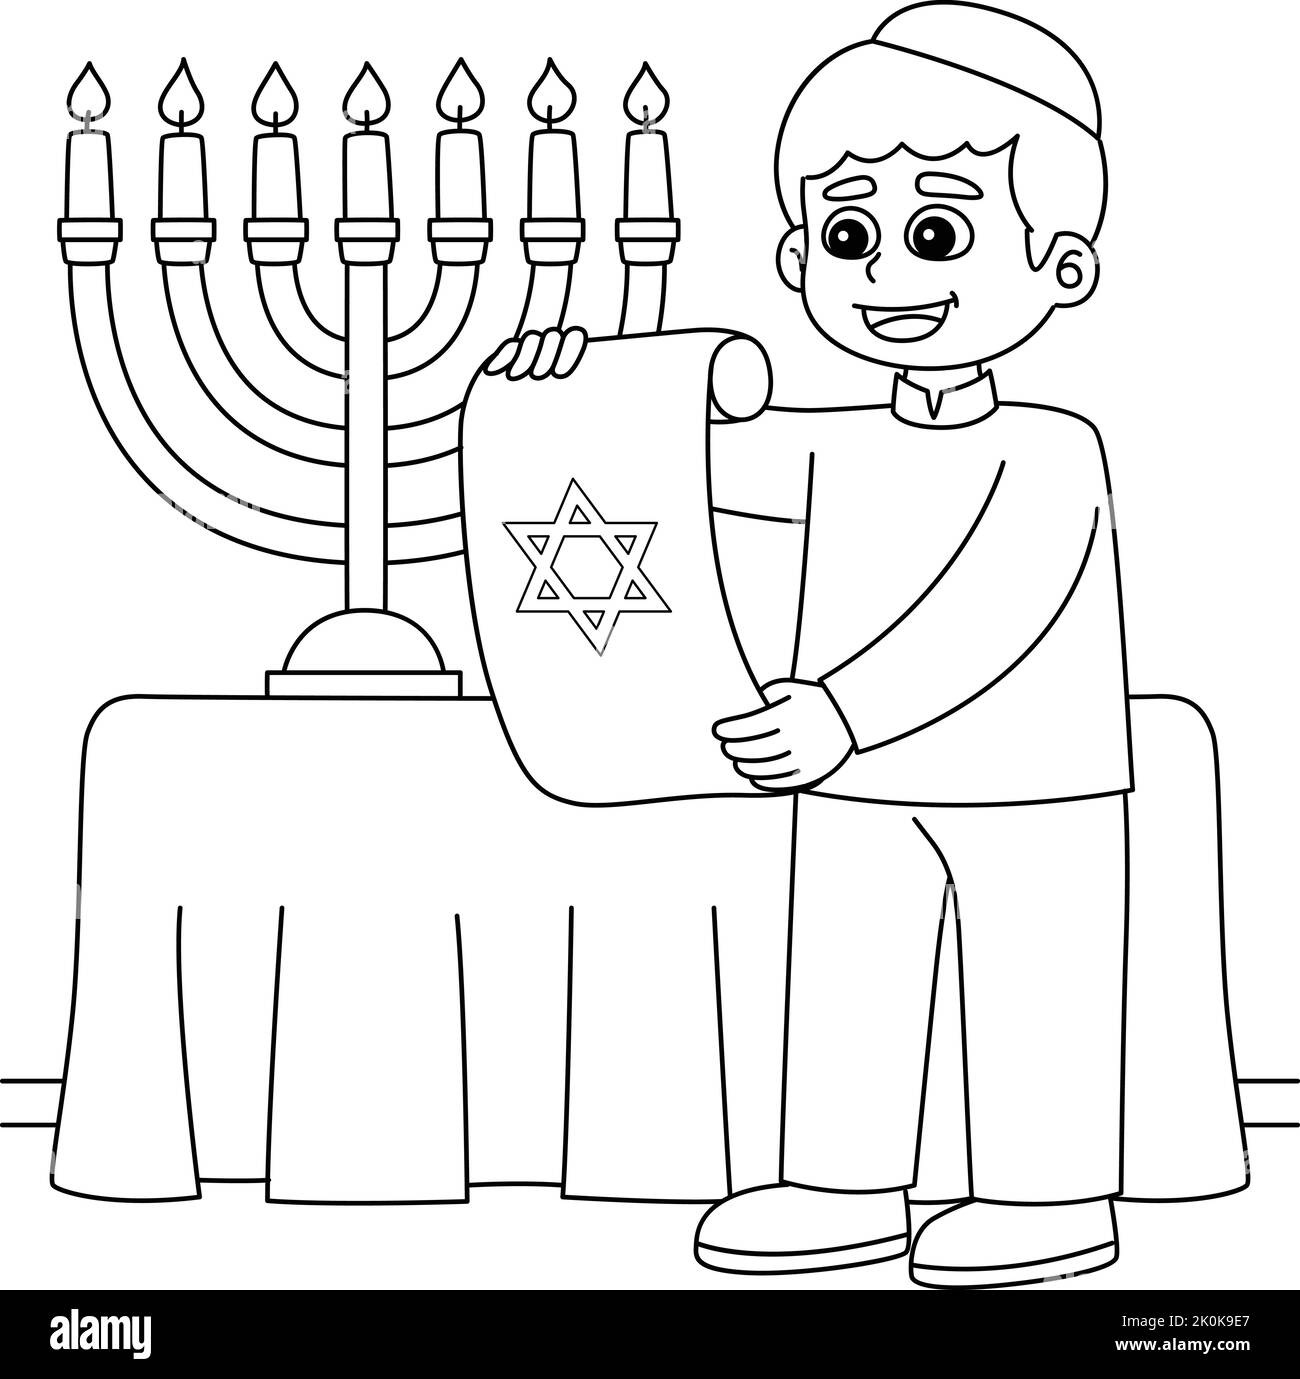 Hanukkah Ebraico con Scroll Coloring Page per bambini Illustrazione Vettoriale